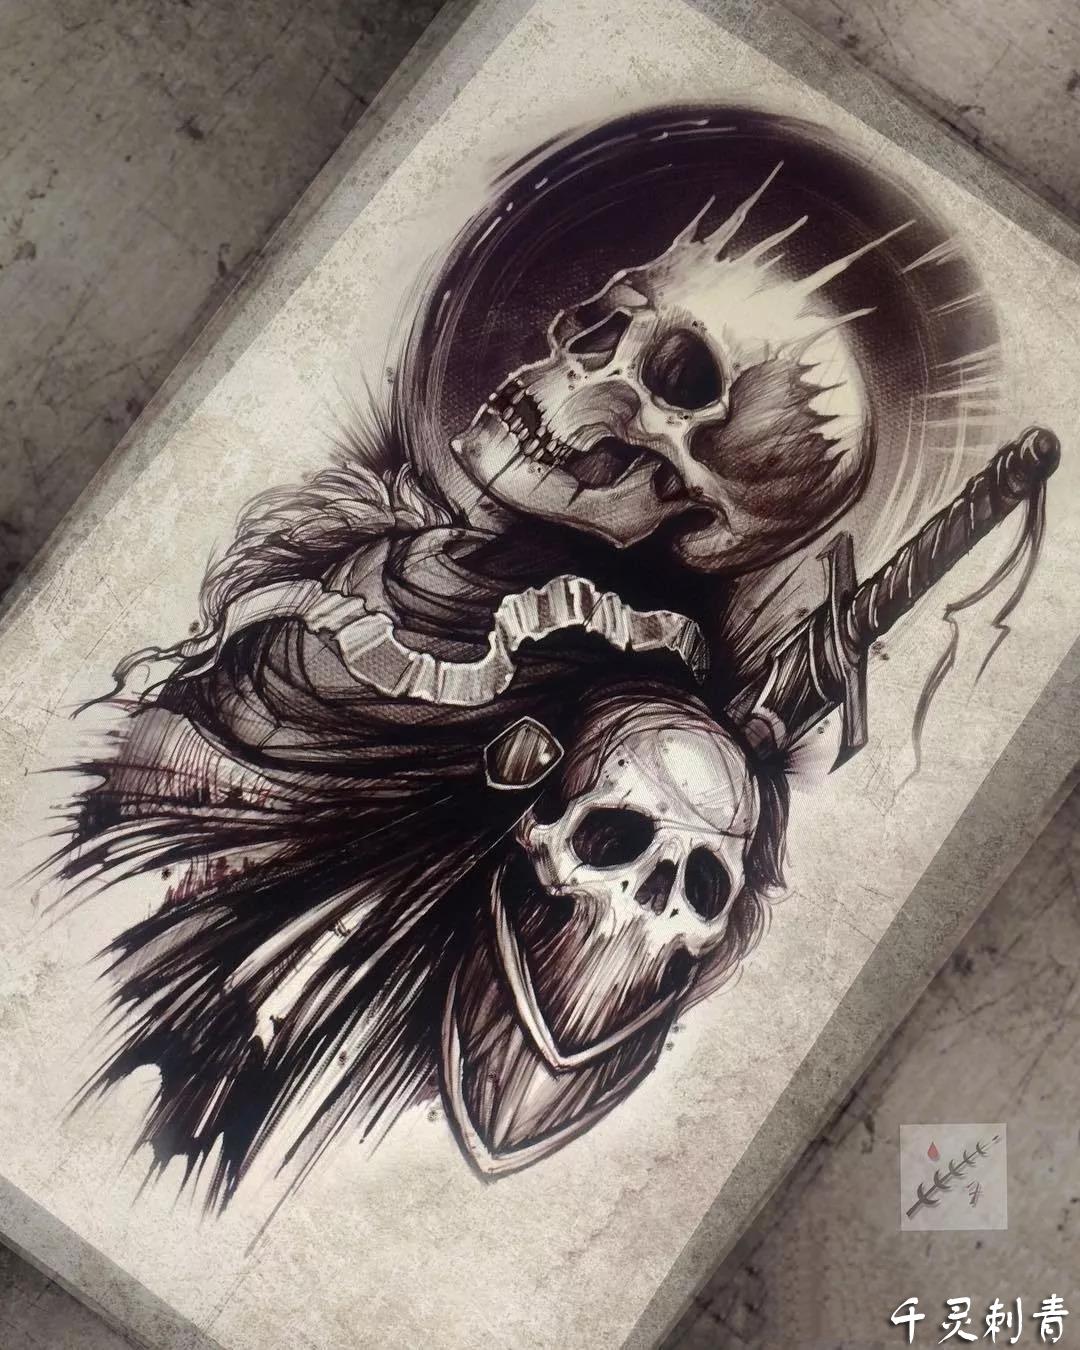 暗黑骷髅头纹身,暗黑骷髅头纹身手稿,暗黑骷髅头纹身手稿图案